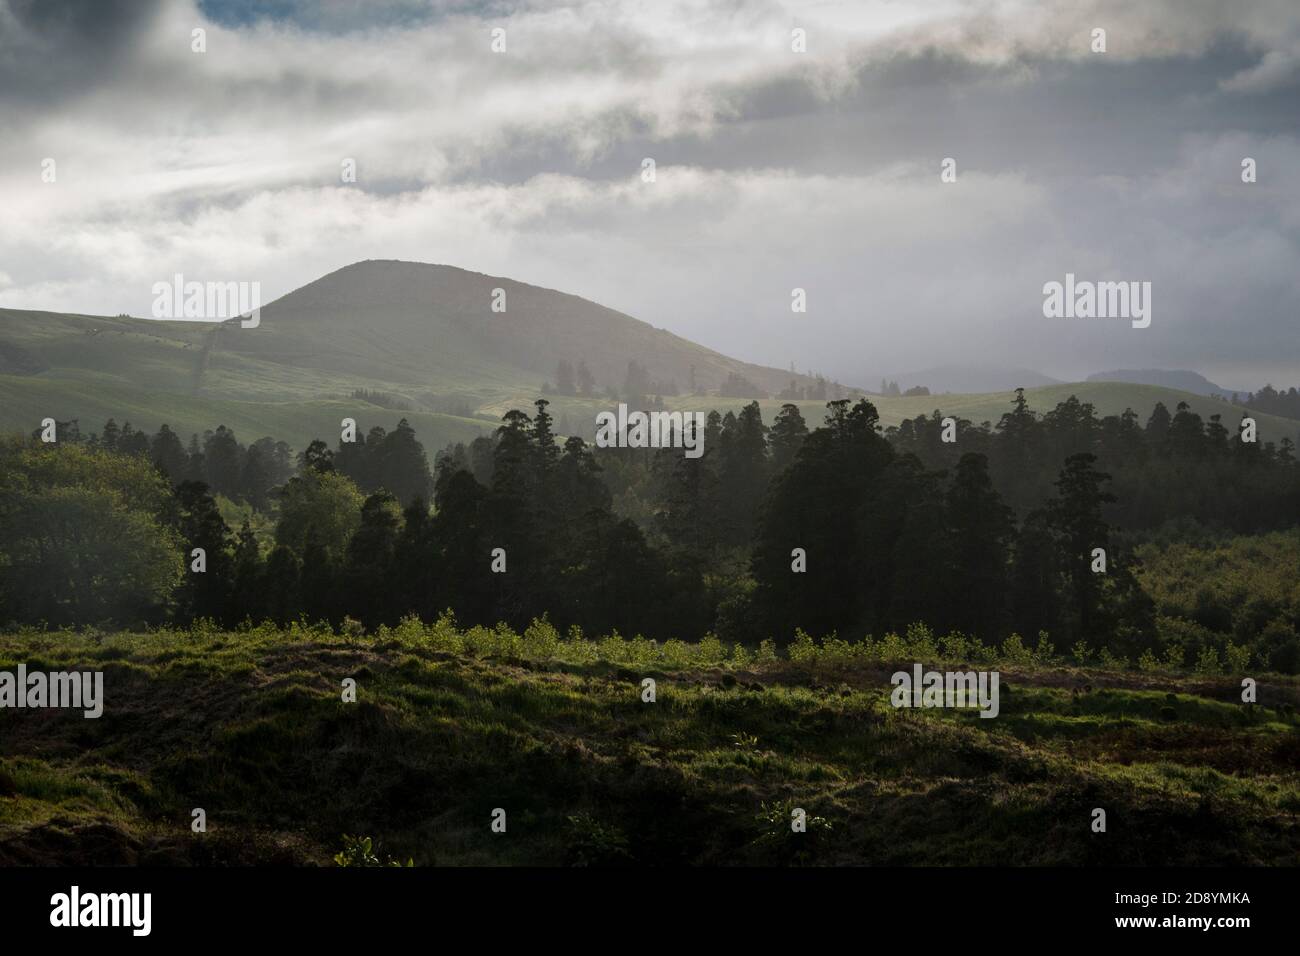 Vista panoramica della campagna pianure con alberi forestali e colline all'orizzonte, in una giornata torbida Foto Stock